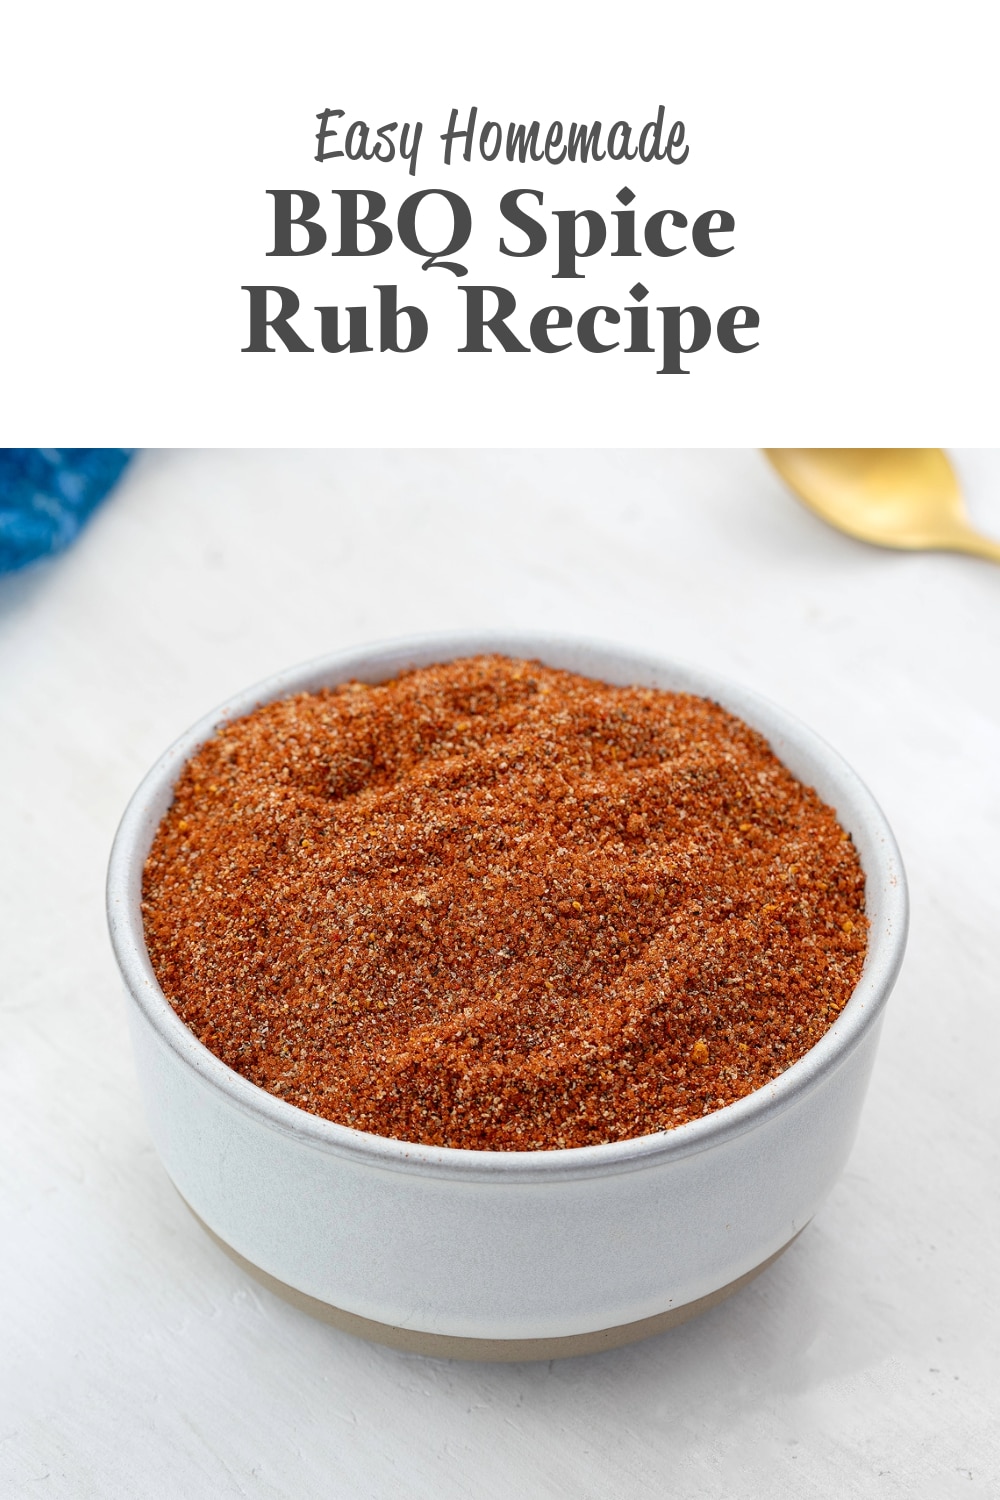 BBQ Spice Rub Recipe - Yellow Chili's